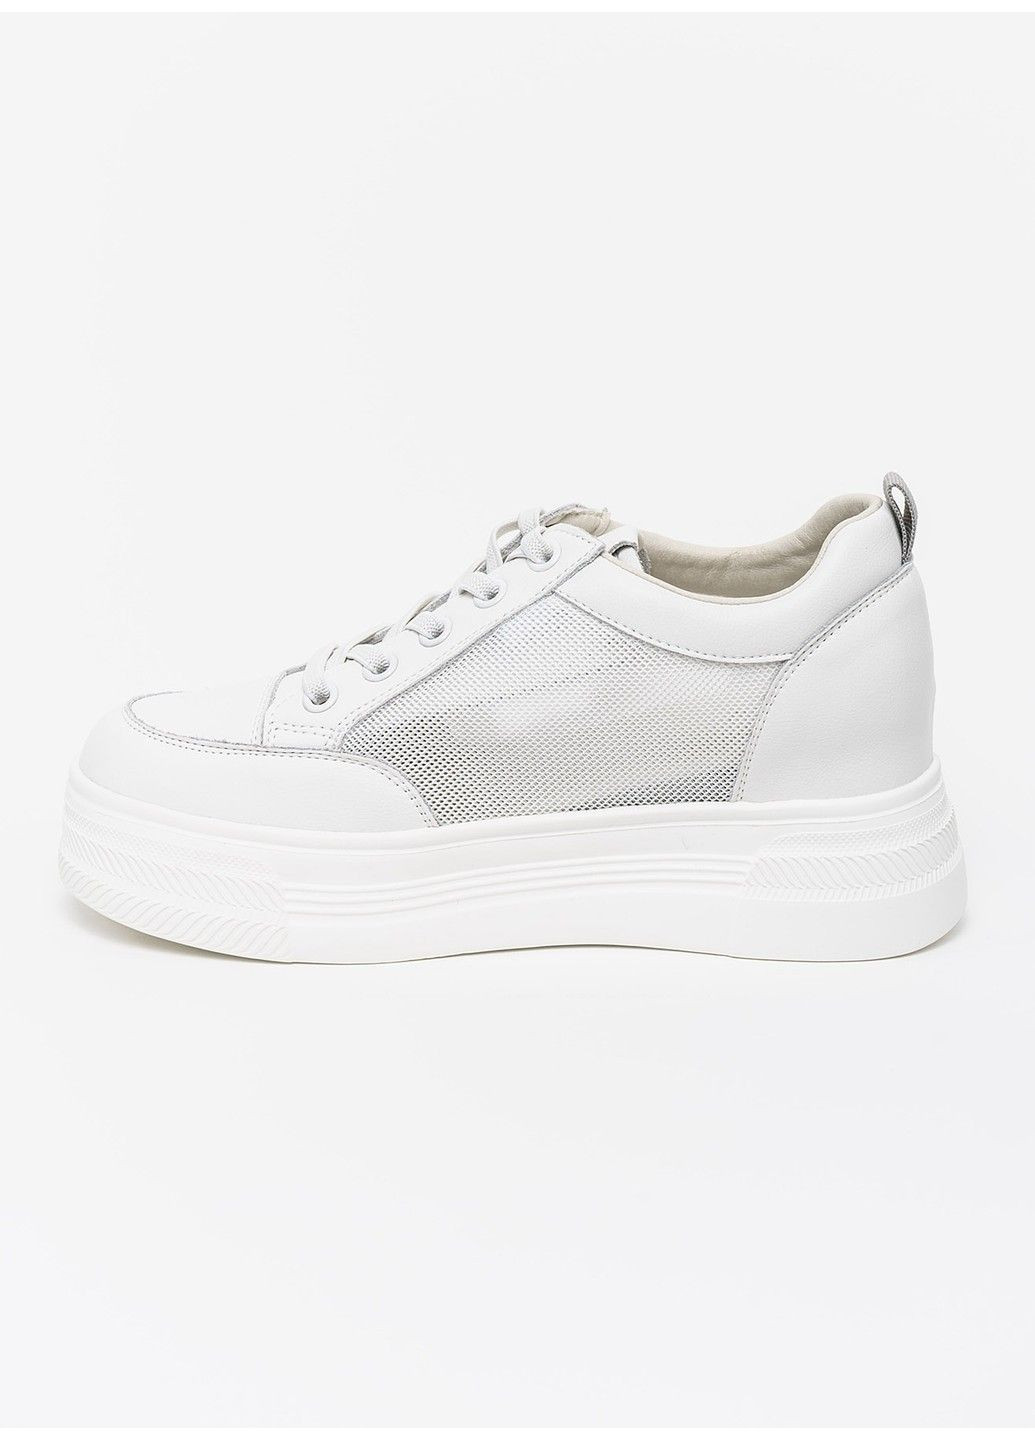 Белые демисезонные женские кроссовки 1100095 Buts